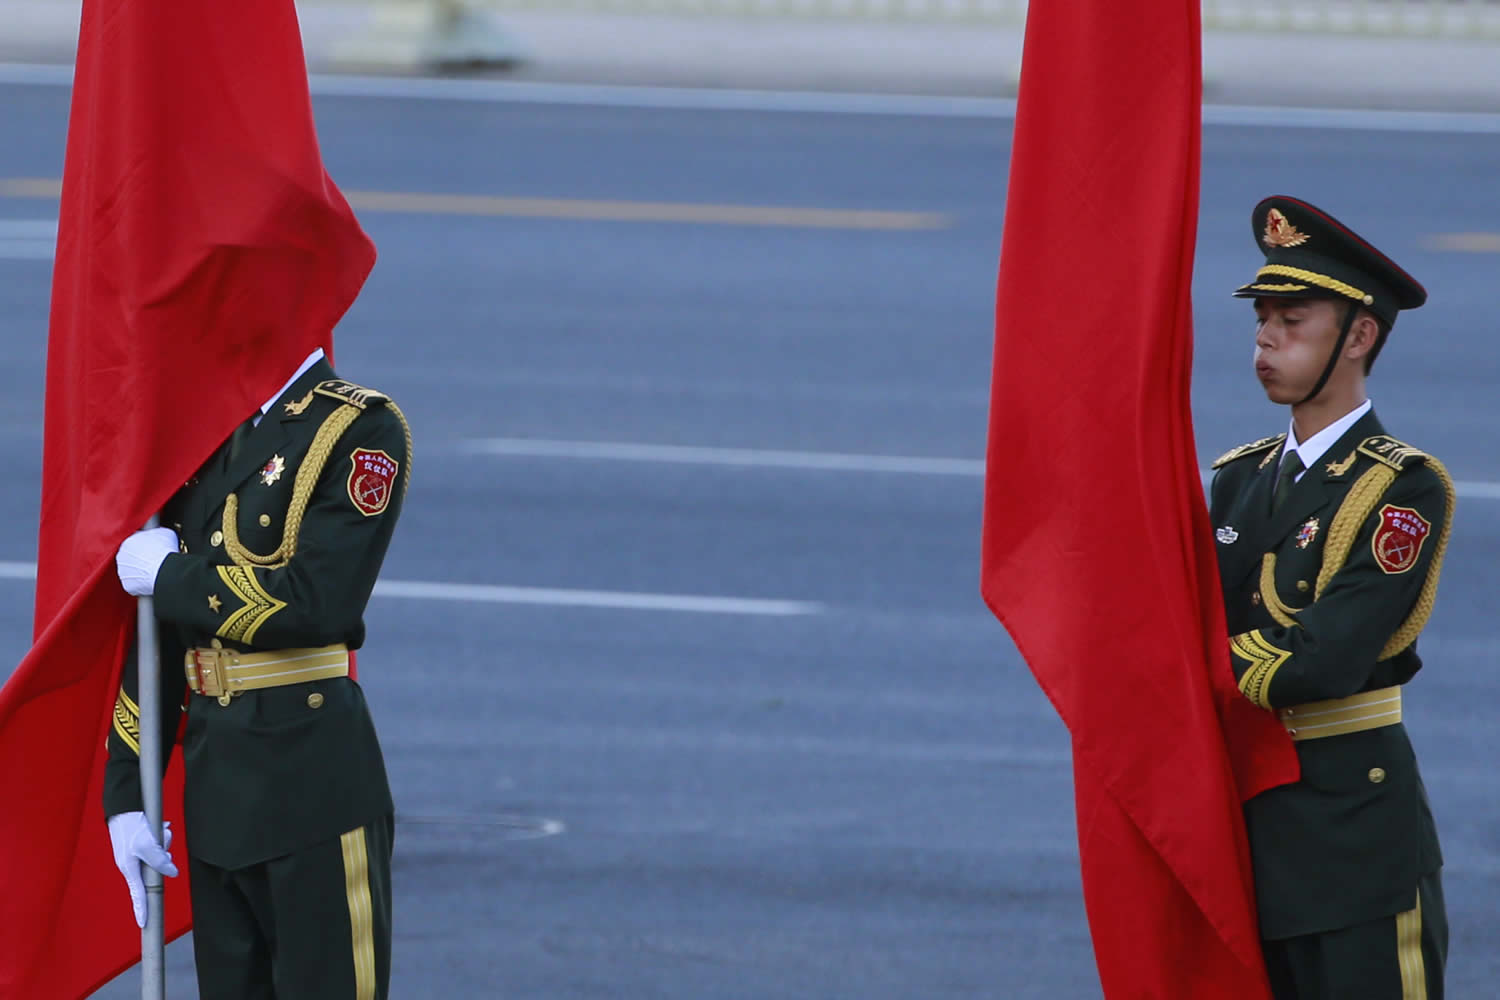 El suicidio de más de 30 funcionarios comunistas chinos rompe el secretismo oficial